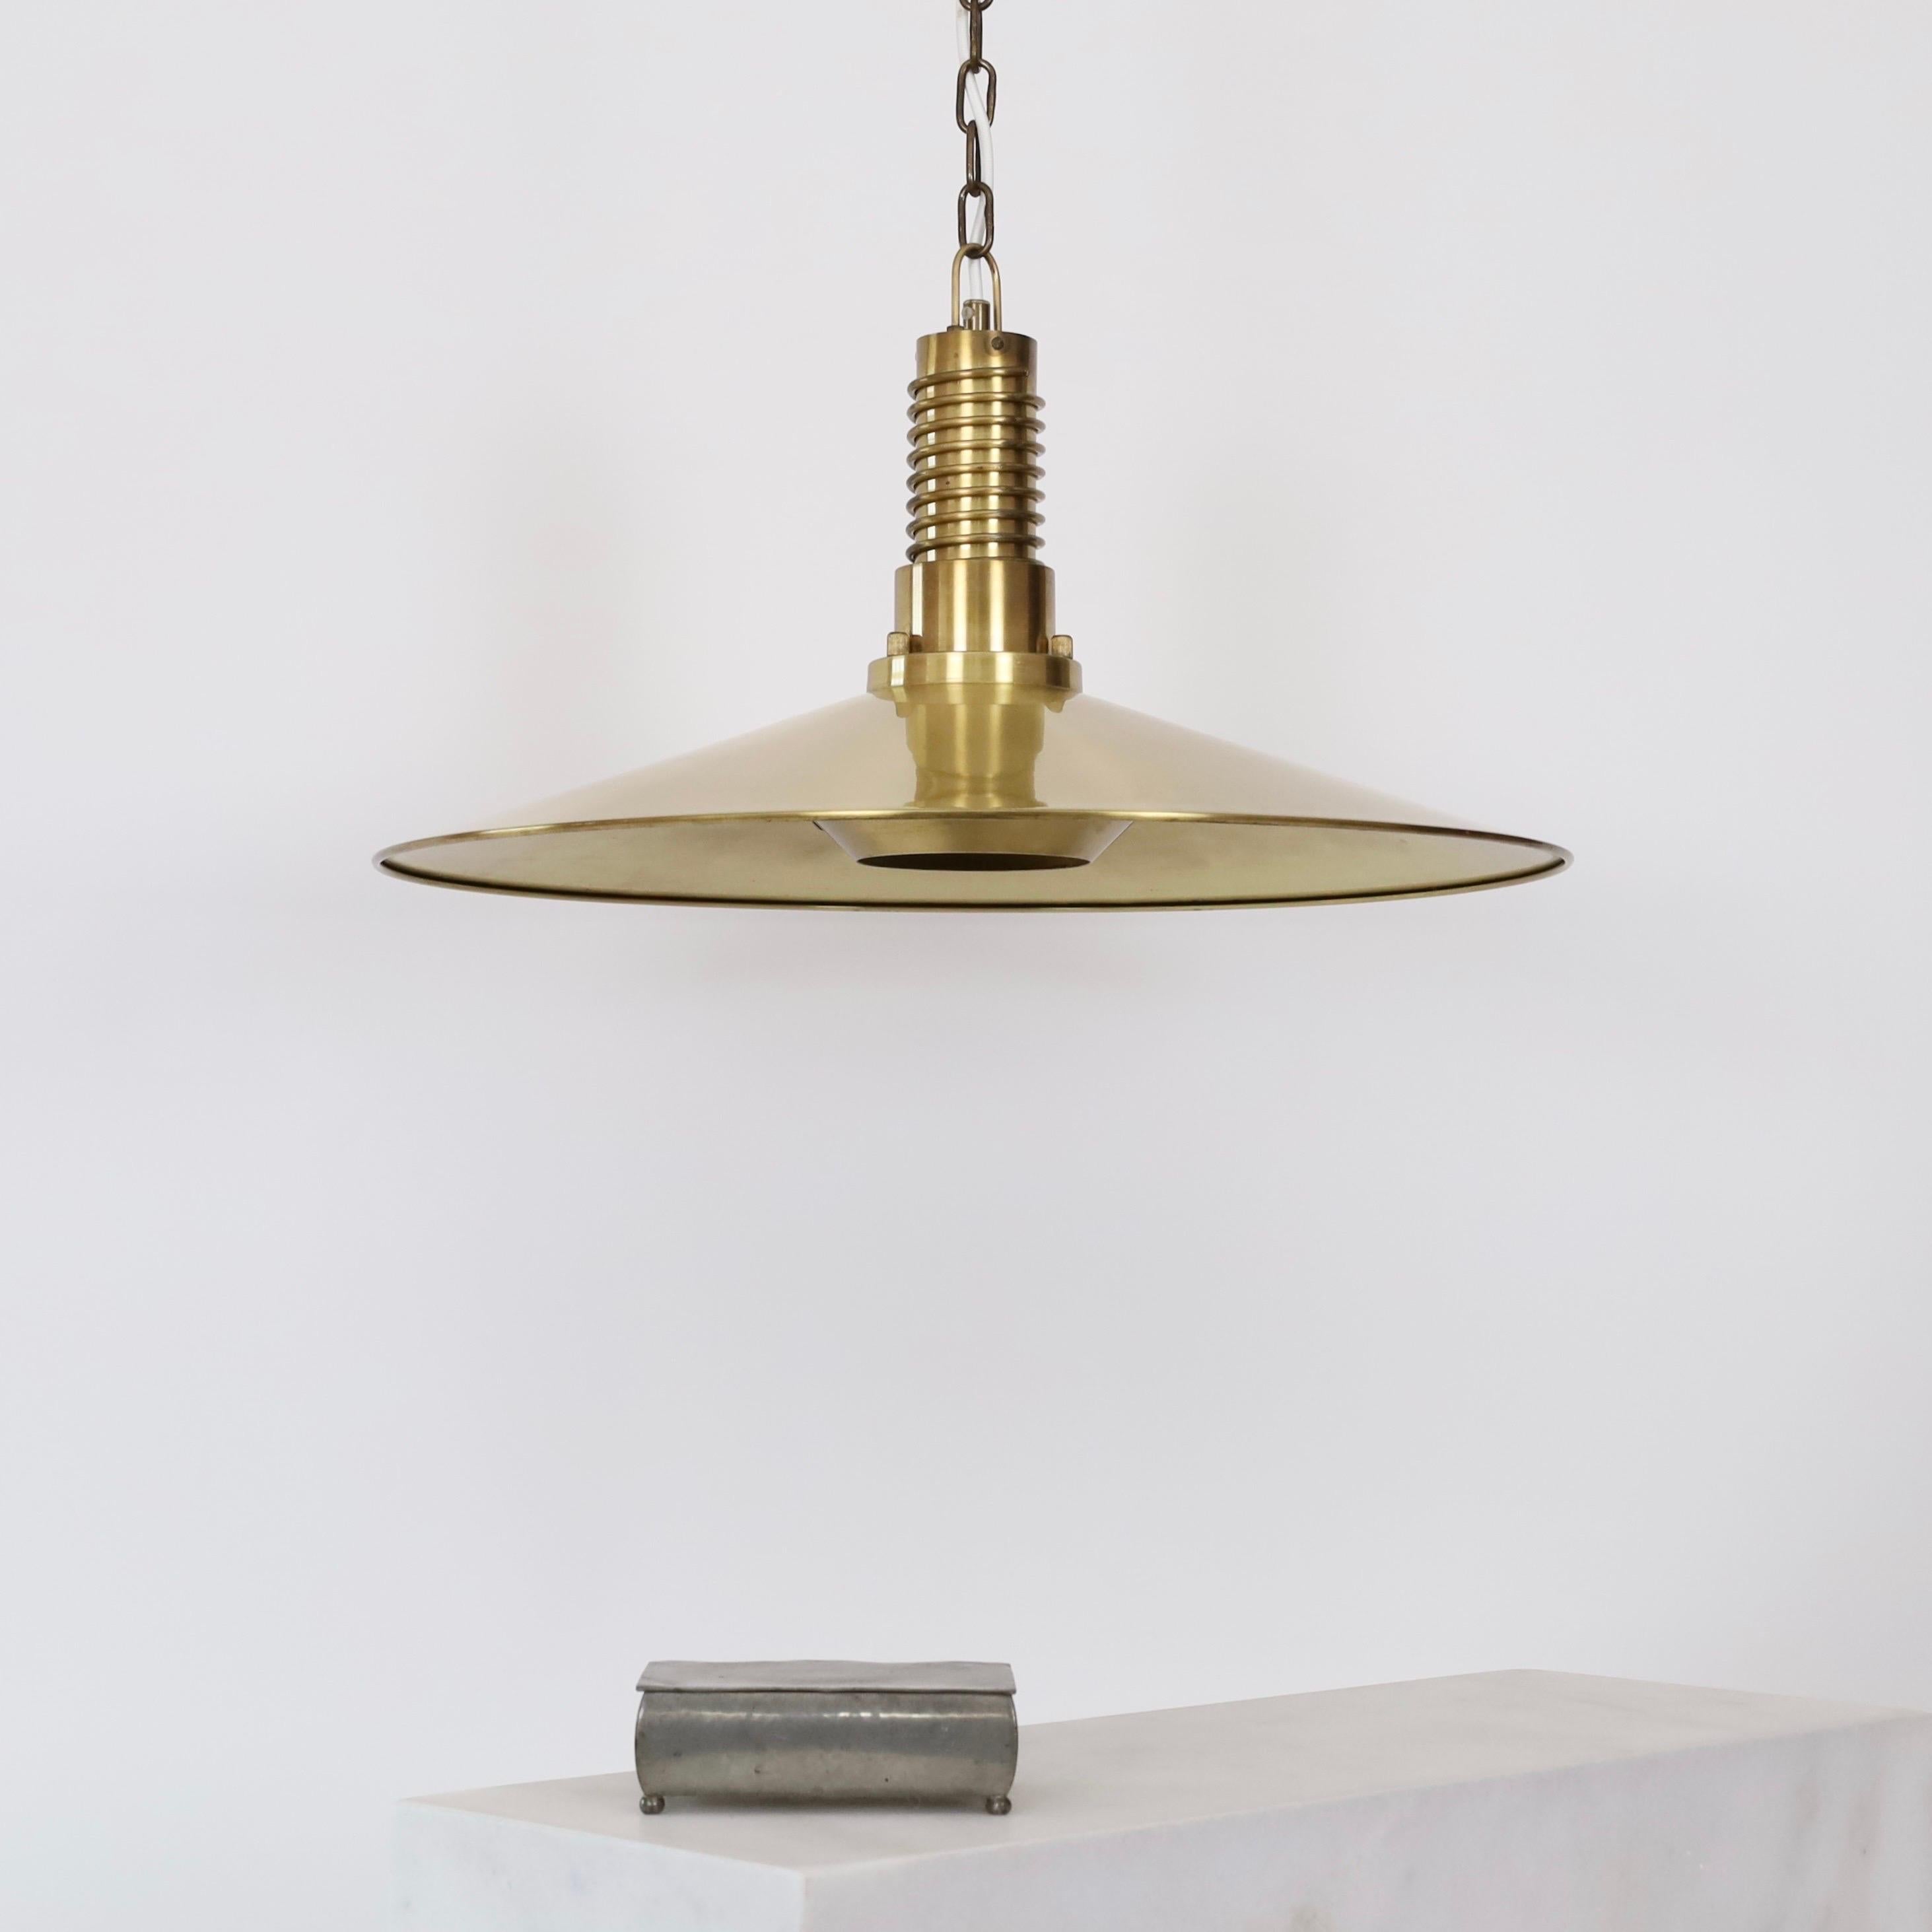 Substantial Danish Modern Brass Pendant Light by Fog & Morup, 1960s, Denmark For Sale 1